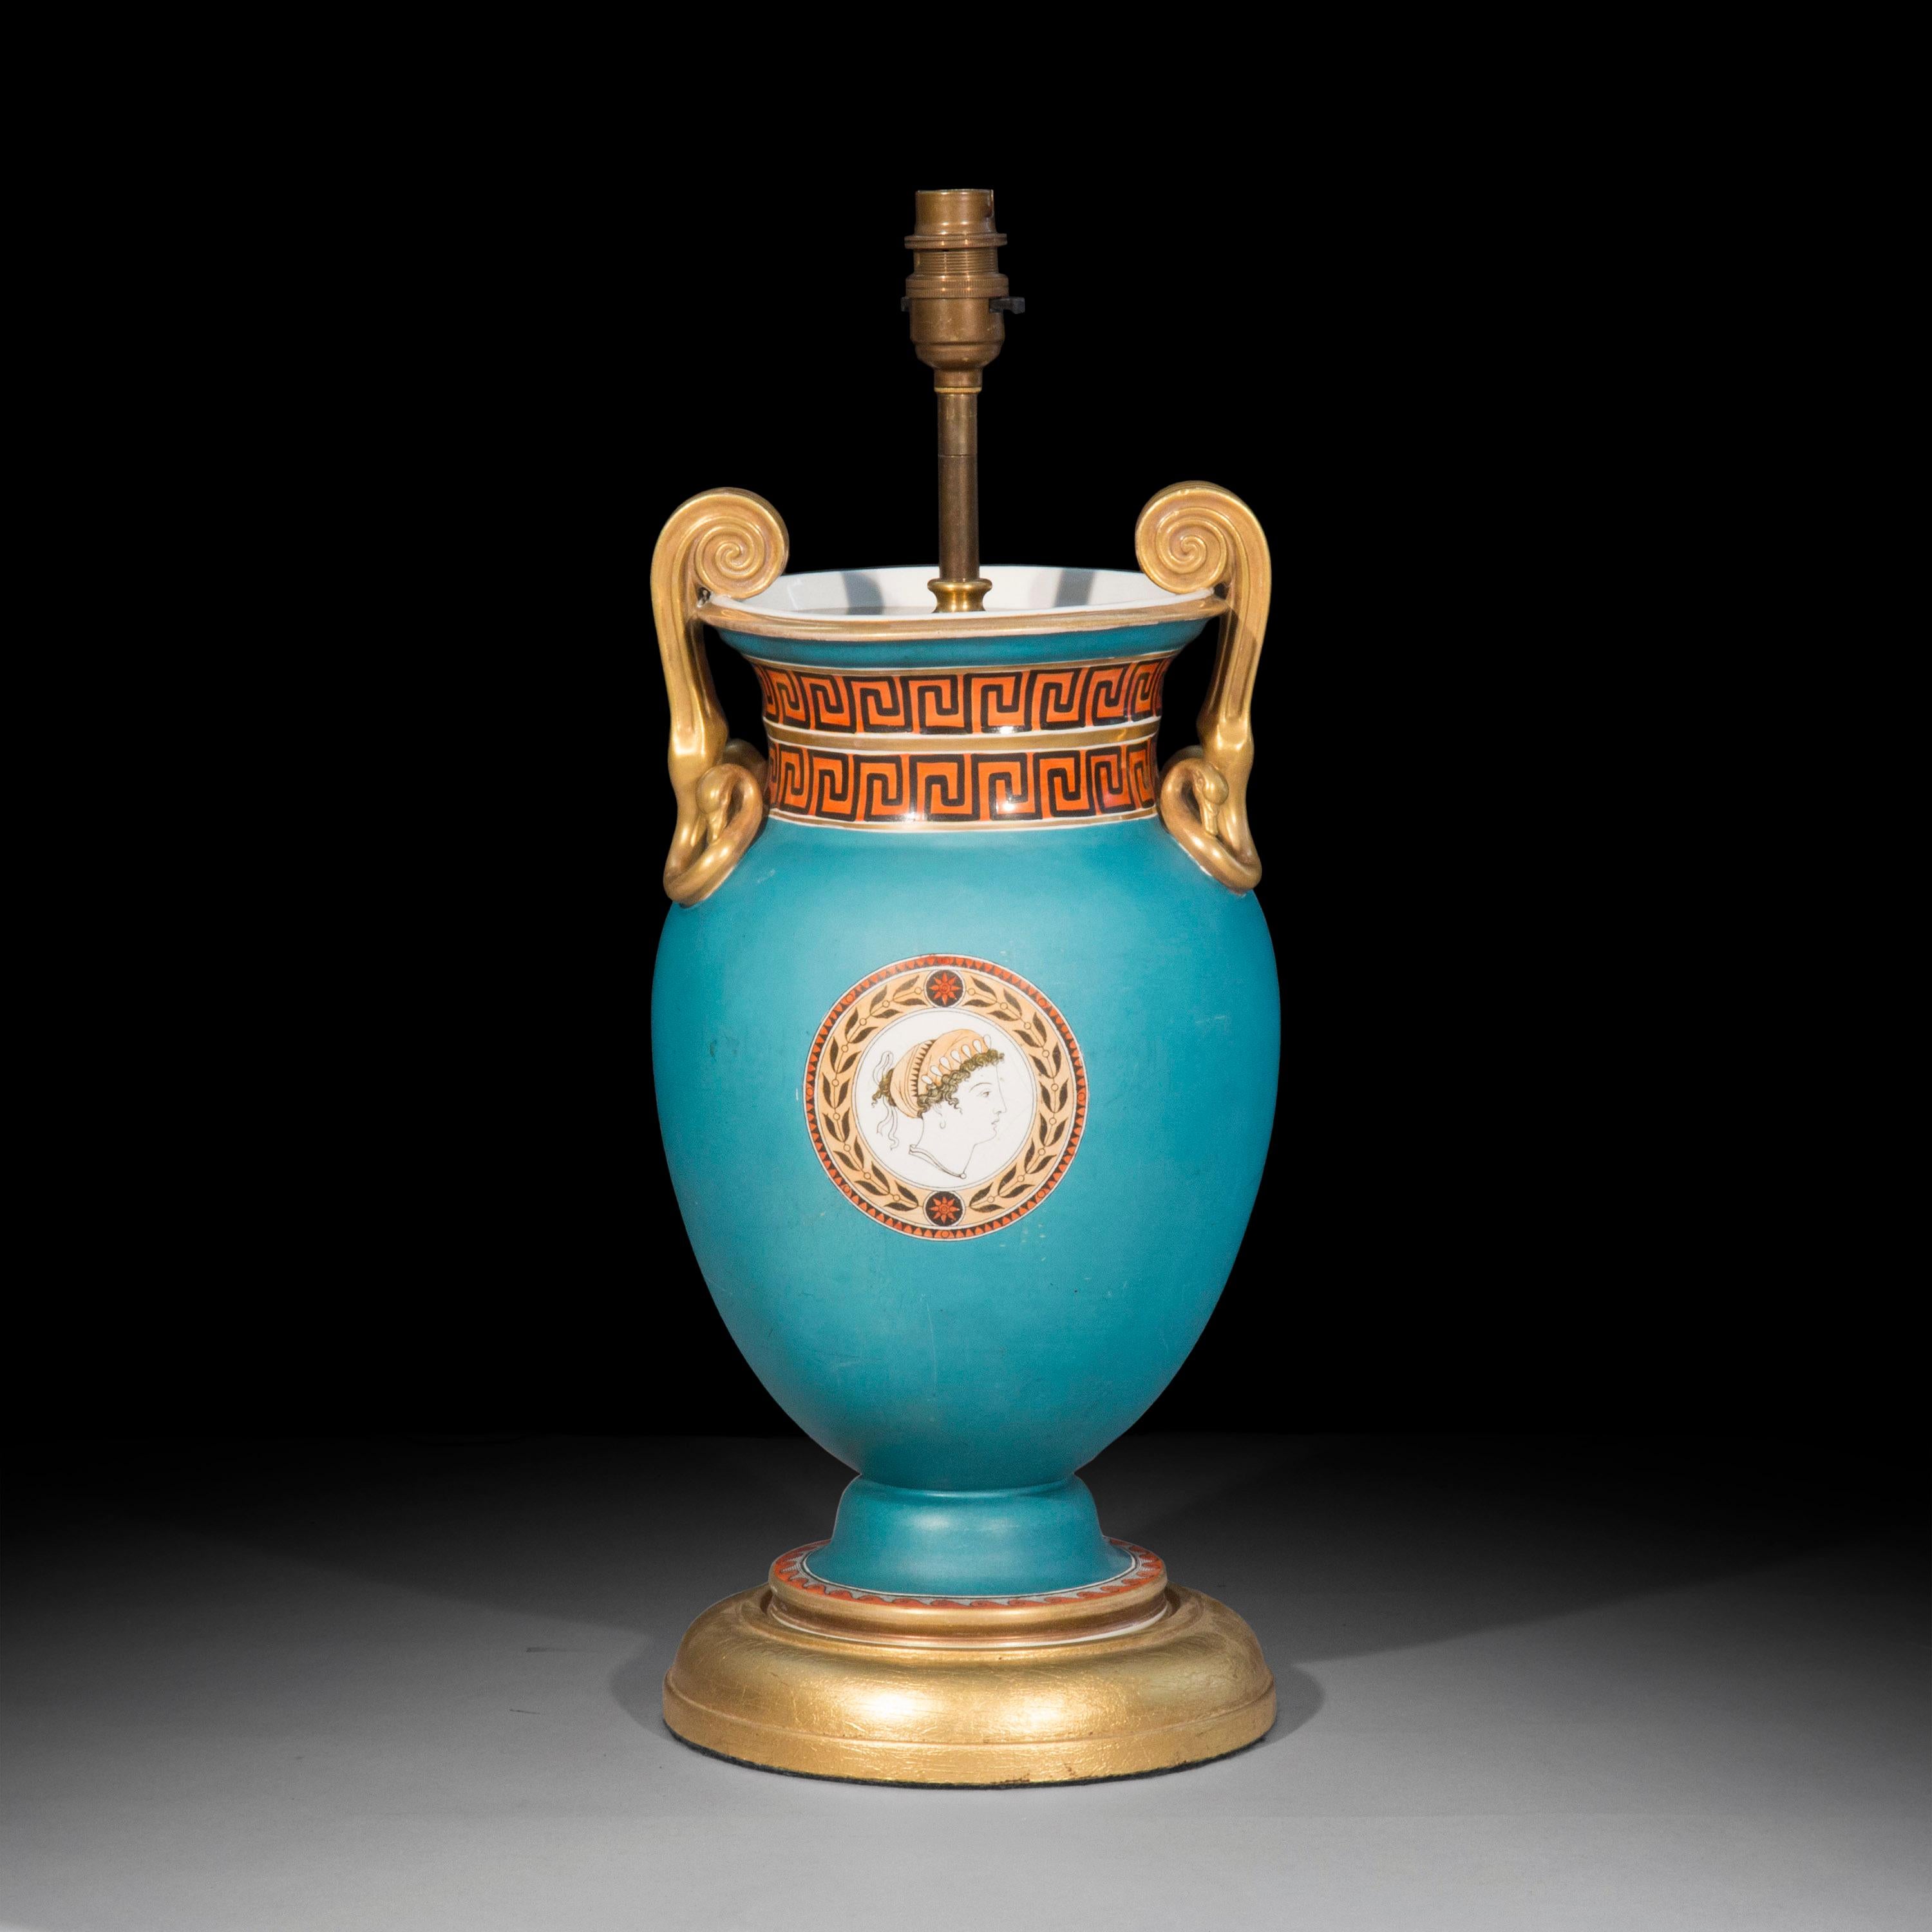 Sehr dekorative Grand-Tour-Vase nach einem Entwurf von Thomas Hope, montiert als Tischlampe, aus Porzellan mit mattem türkisfarbenem Grund und glasierten klassischen Ornamenten.
Englisch, frühes 19. Jahrhundert.

Warum wir es mögen
Eine unglaublich